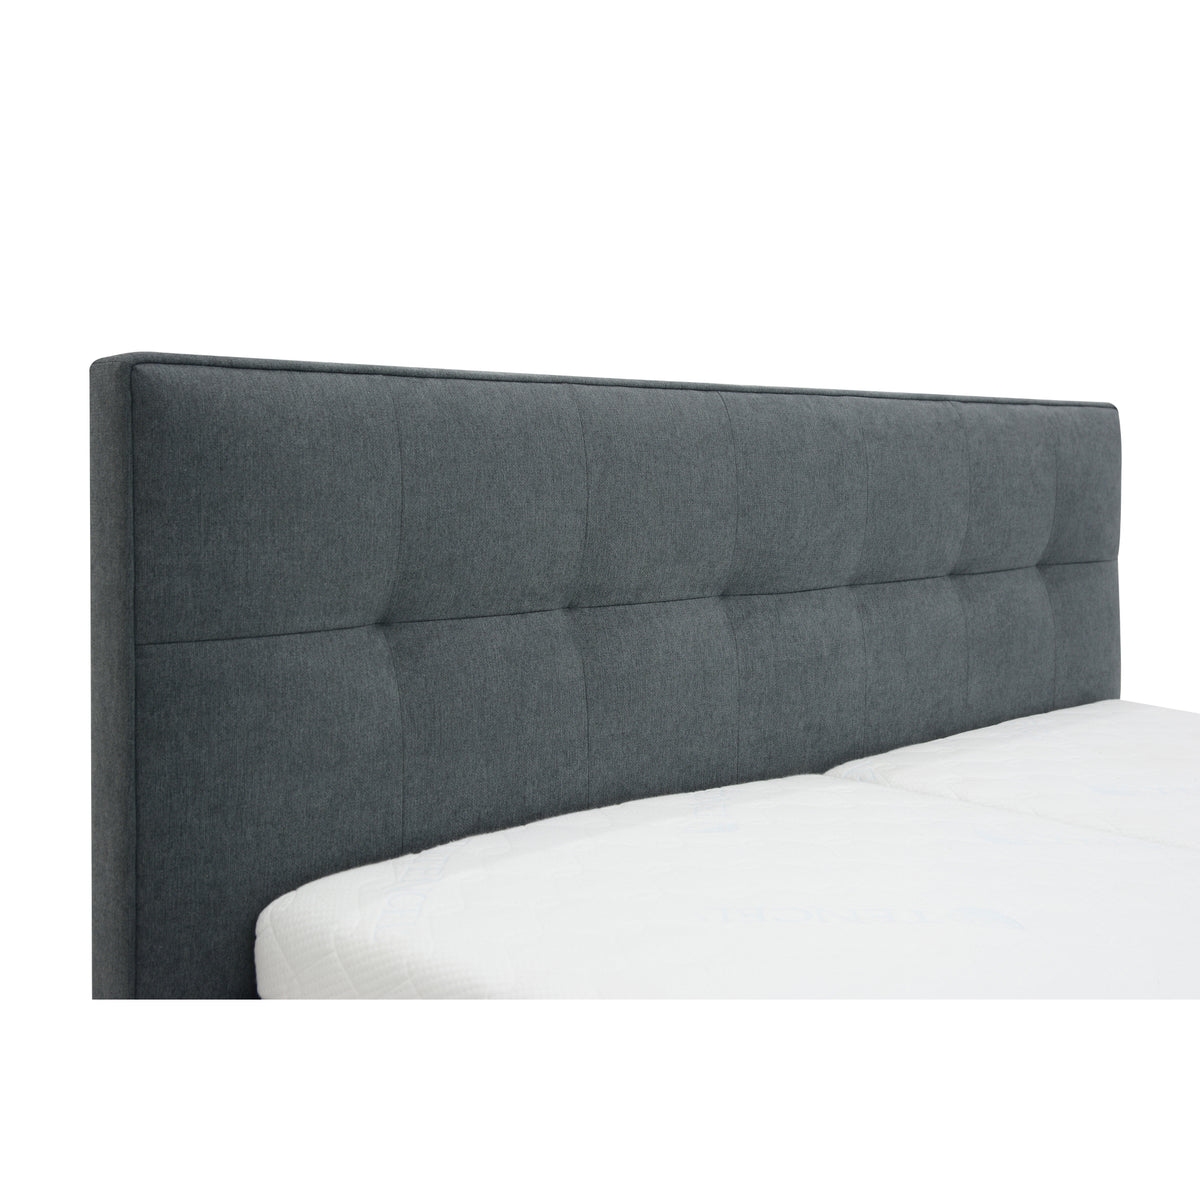 Čalúnená posteľ Trend 160x200, sivá, bez matraca, bočný výklop